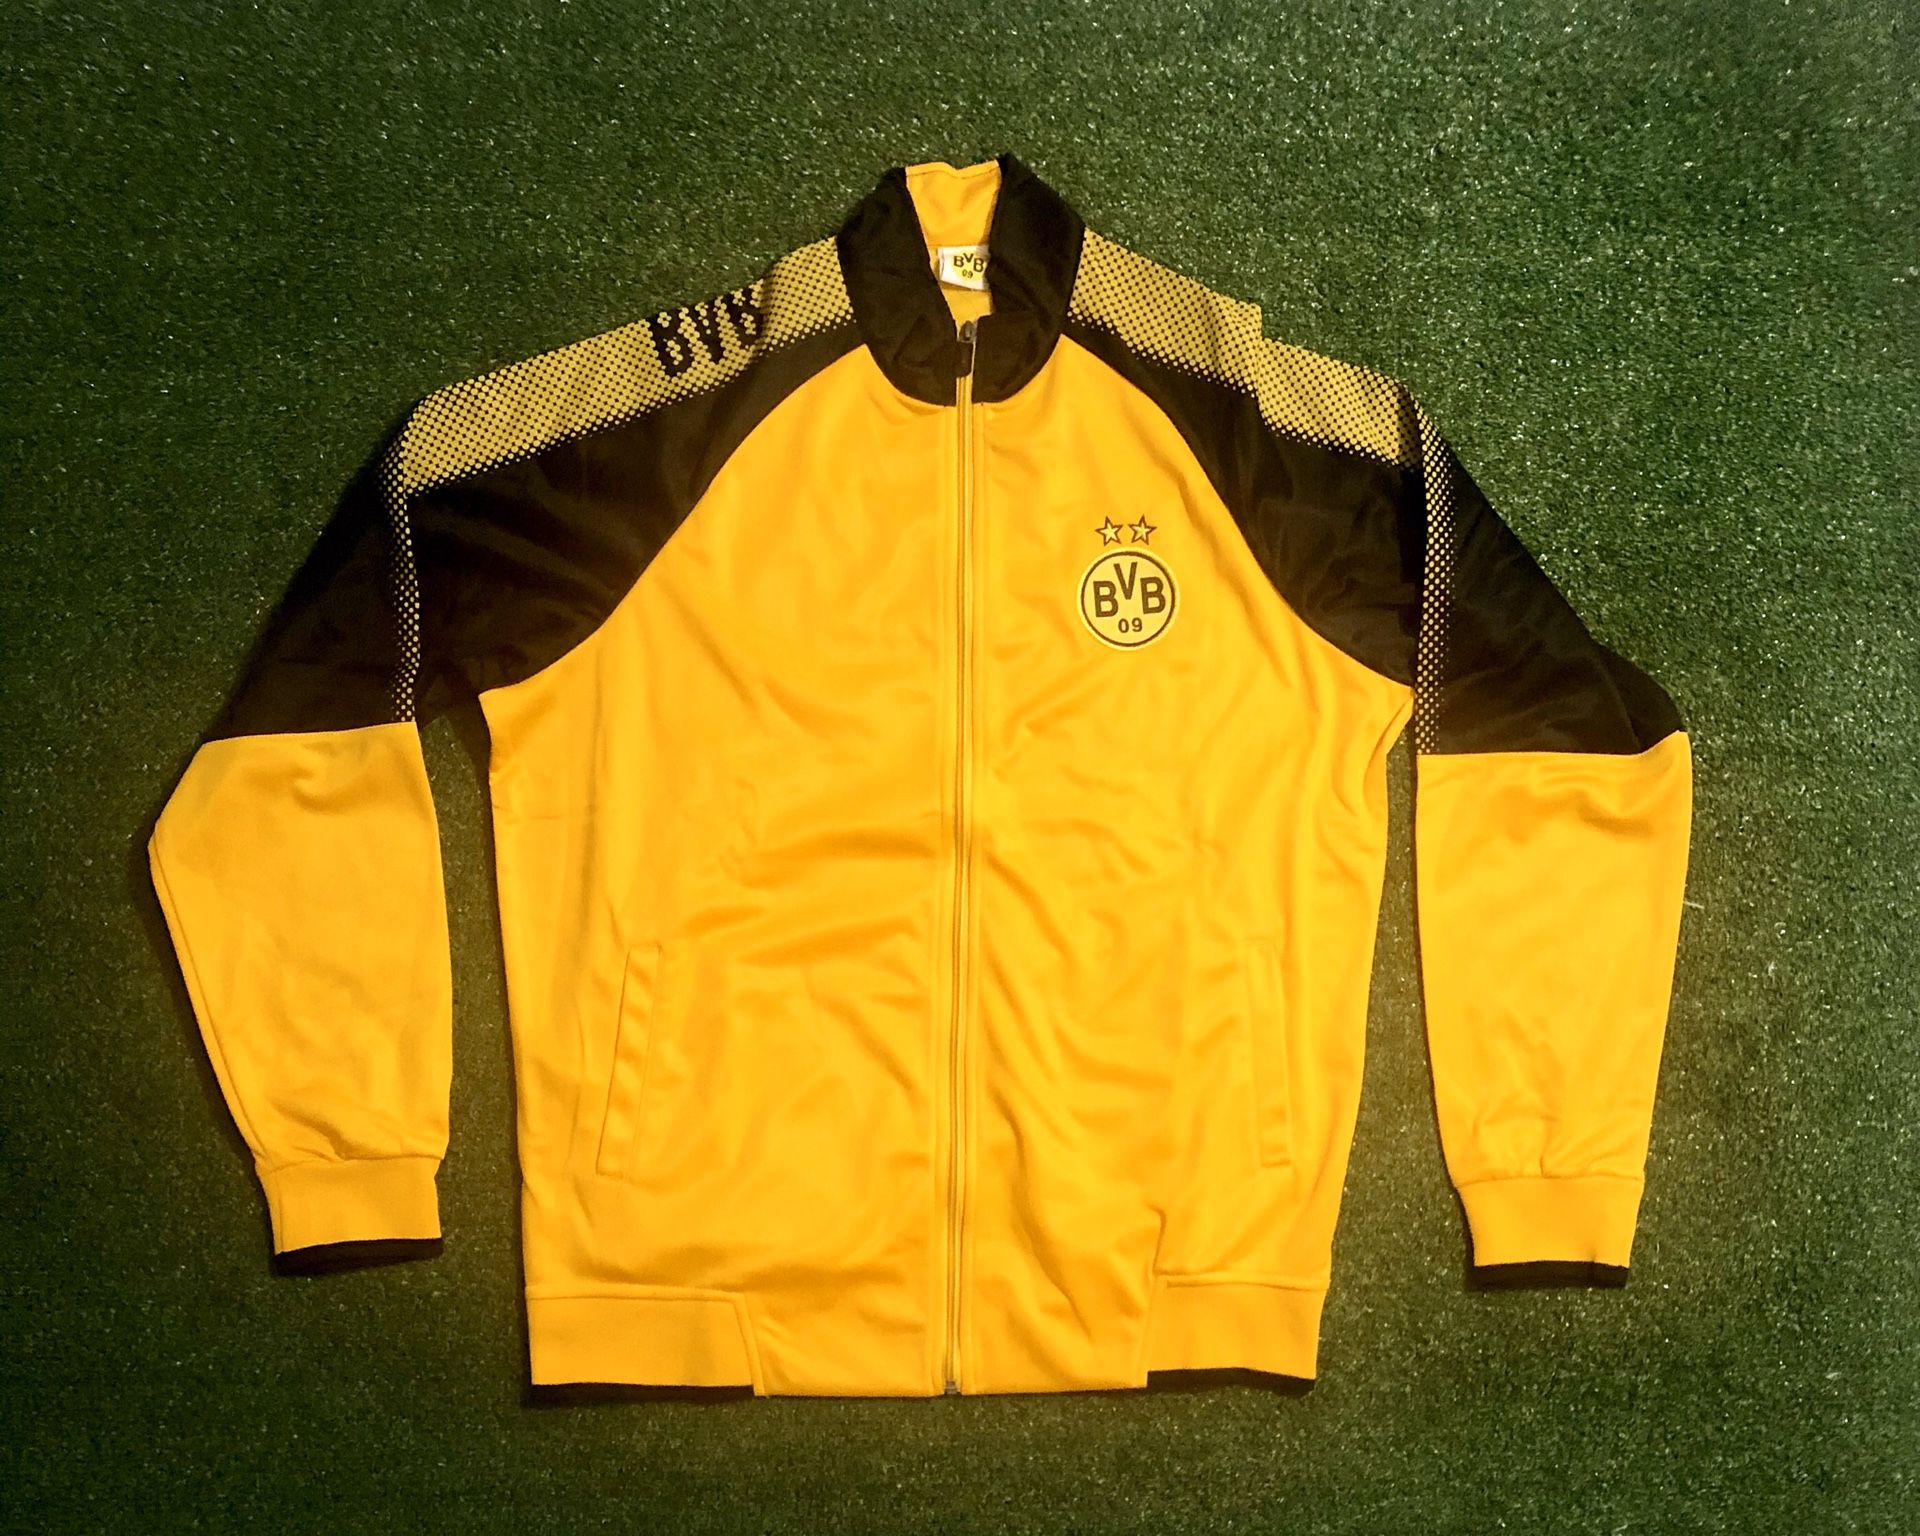 Borussia Dortmund Soccer jacket Adult Large. New